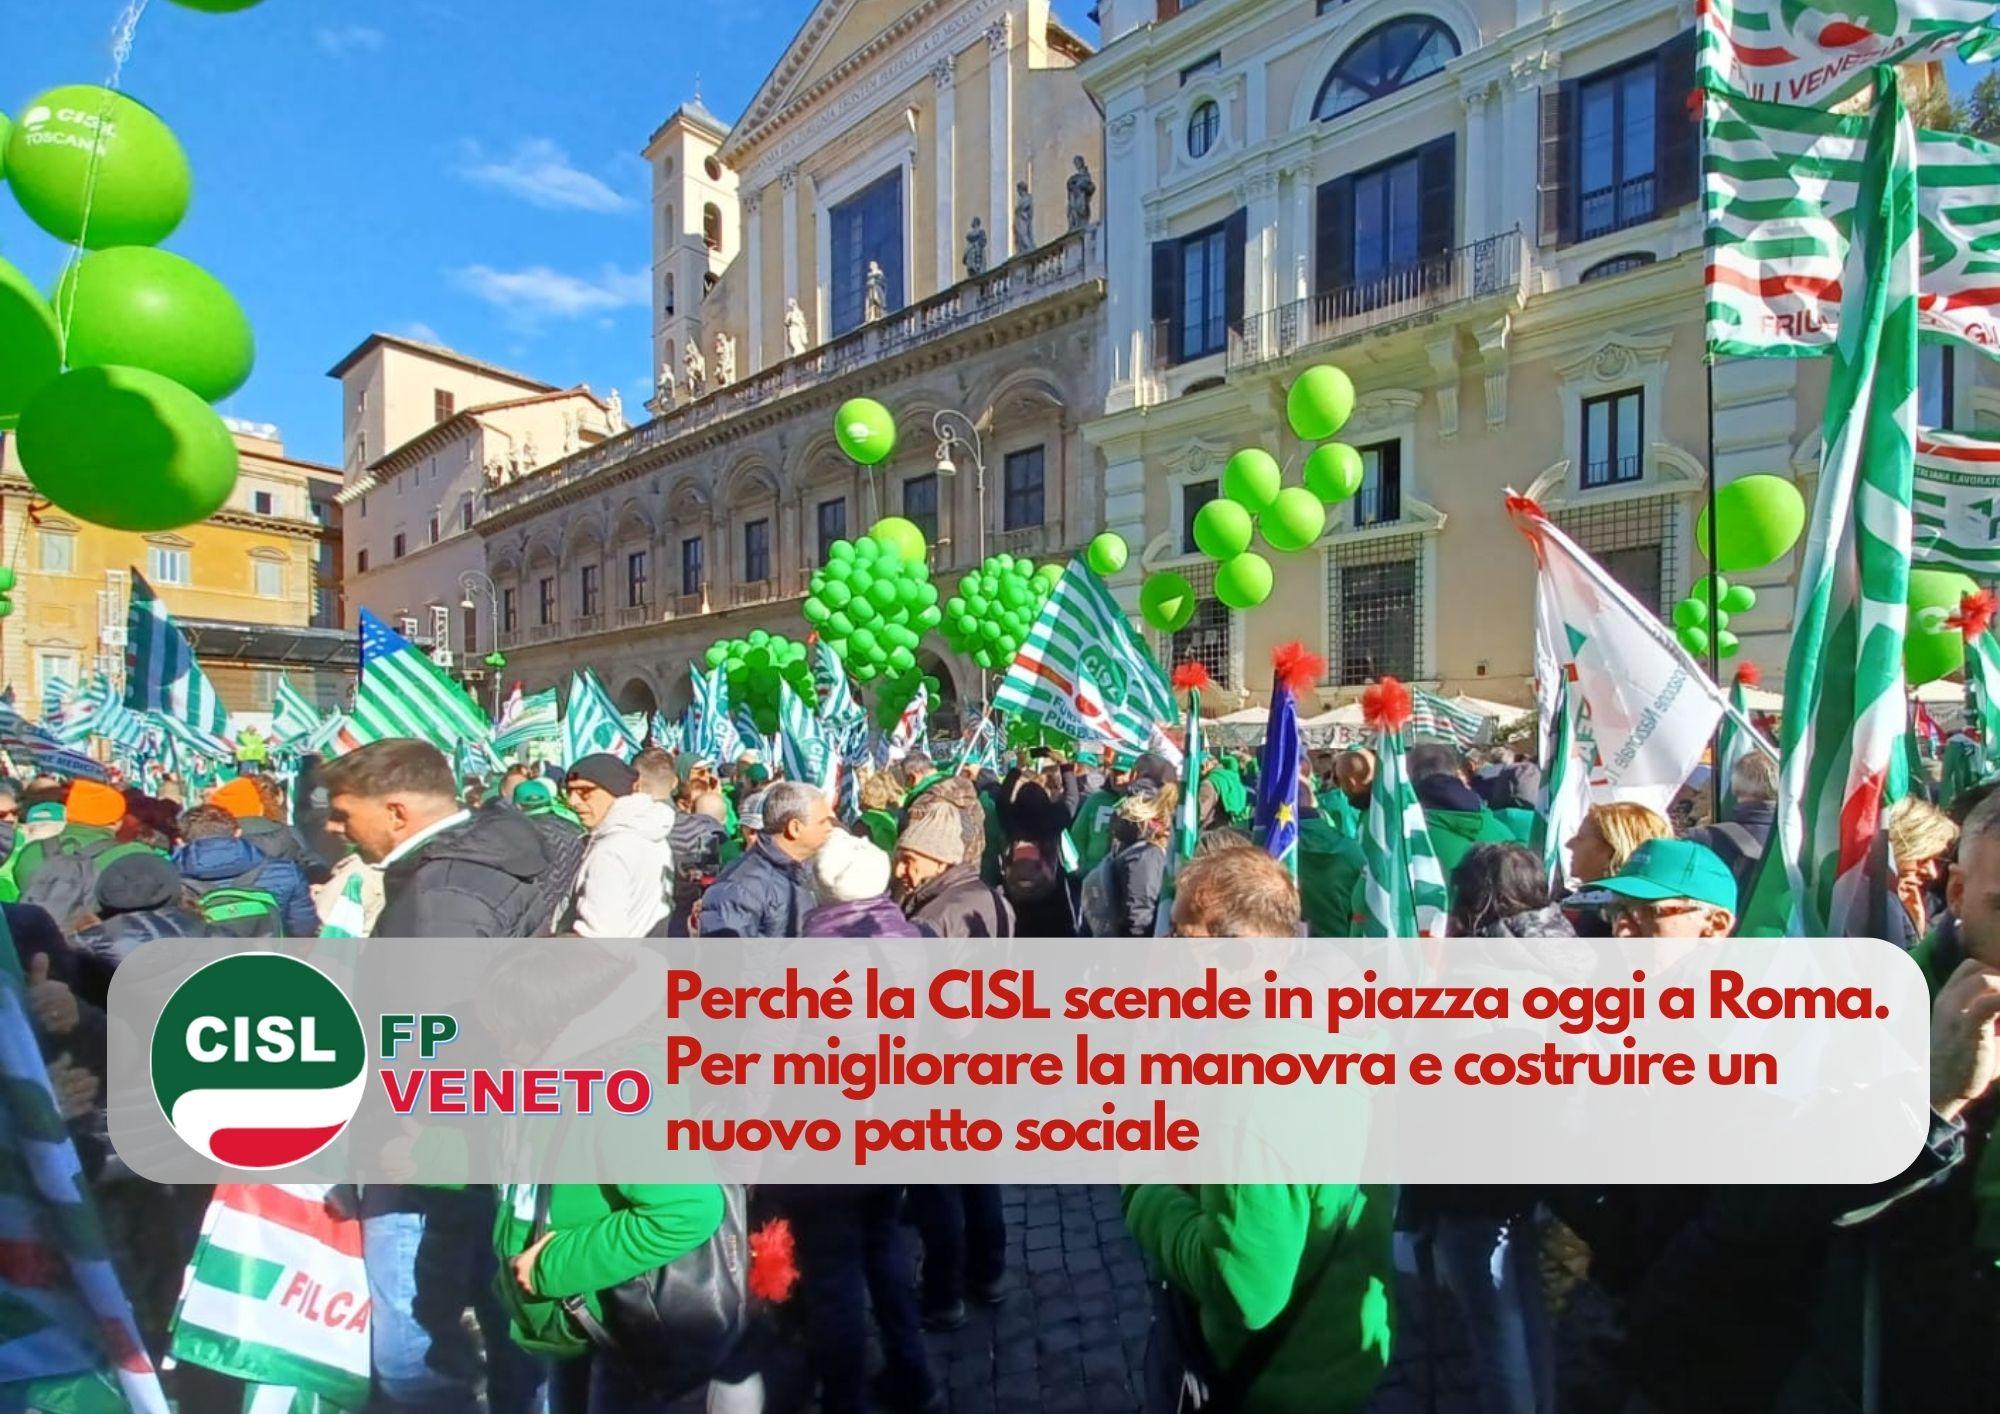 CISL FP Veneto. Perché la CISL scende in piazza oggi a Roma. Per migliorare la manovra e costruire un nuovo patto sociale